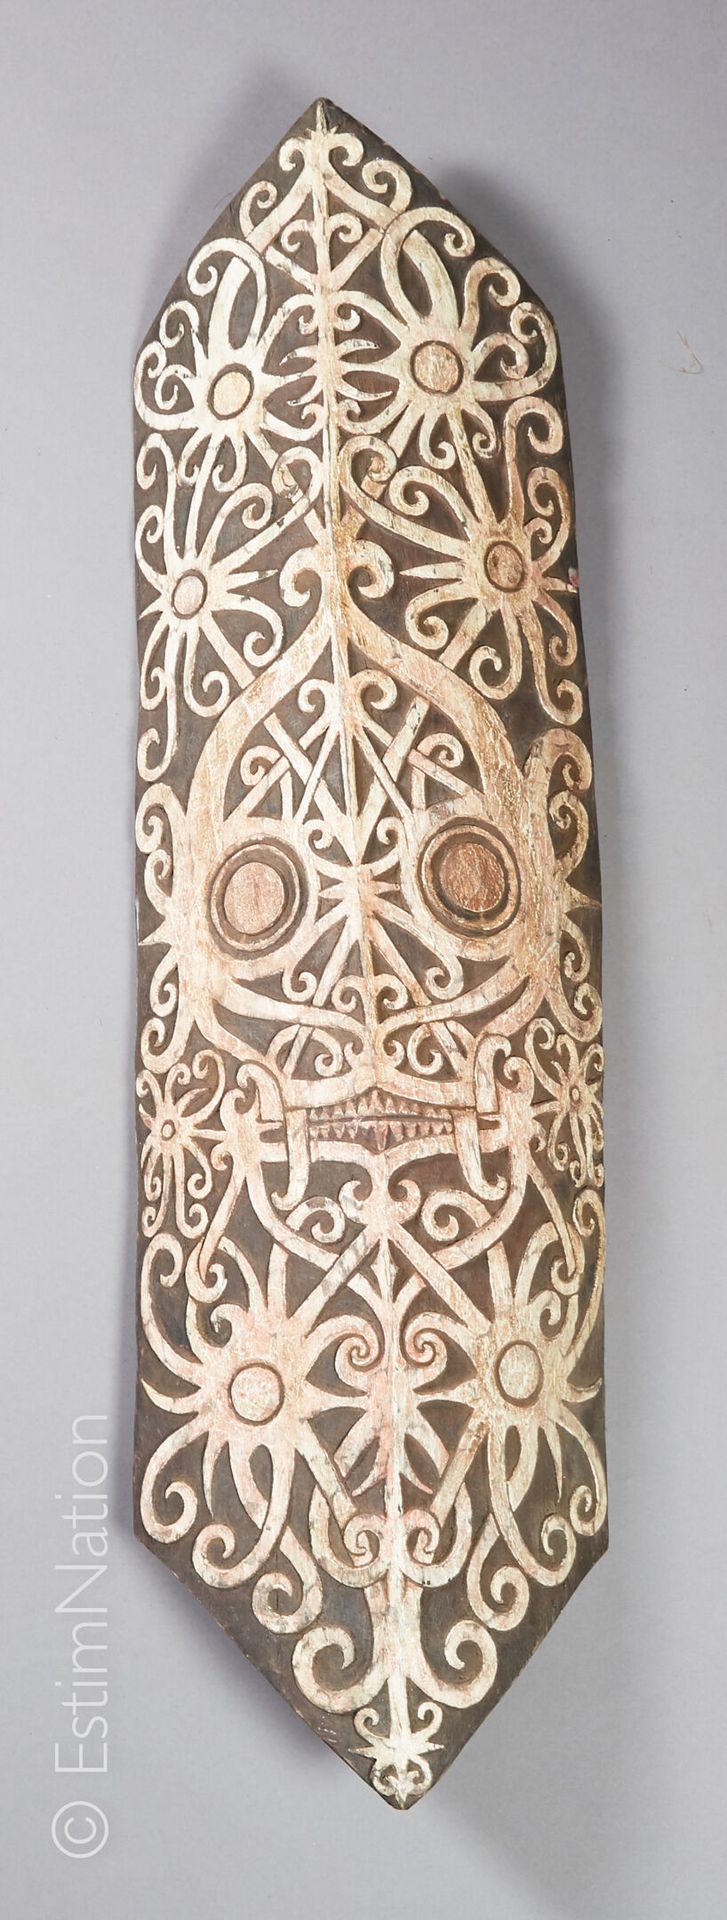 DAYAK - BORNEO 
达亚克-伯尔尼奥









木雕盾牌，用天然颜料强化，有交错的风格化装饰，有模拟太阳的眼睛和突出的下巴的神灵面具。


&hellip;